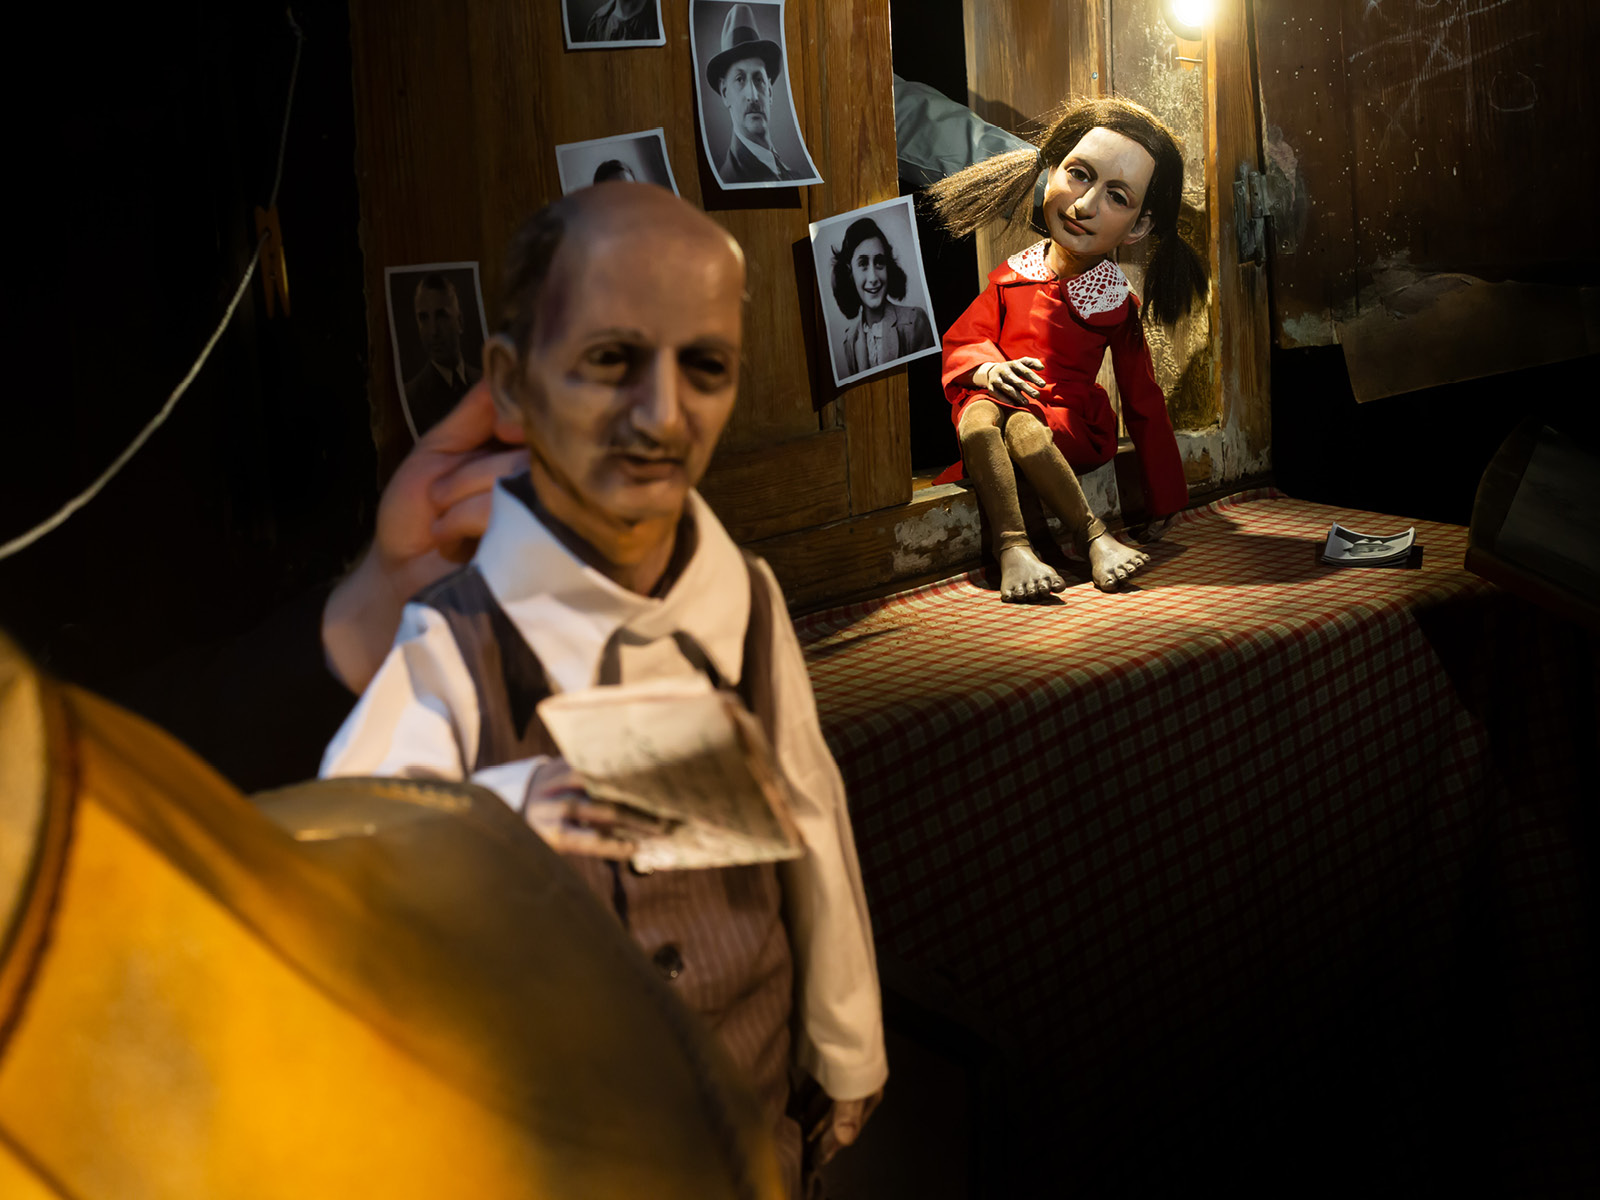 Die Puppe eines Mannes mit Halbglatze, tiefen Schatten unter den Augen und eleganten Klamotten hält einen gefalteten Brief in der Hand. Im Hintergrund ist die barfüßige Puppe von Anne Frank, umgeben von Fotografien zu erkennen.